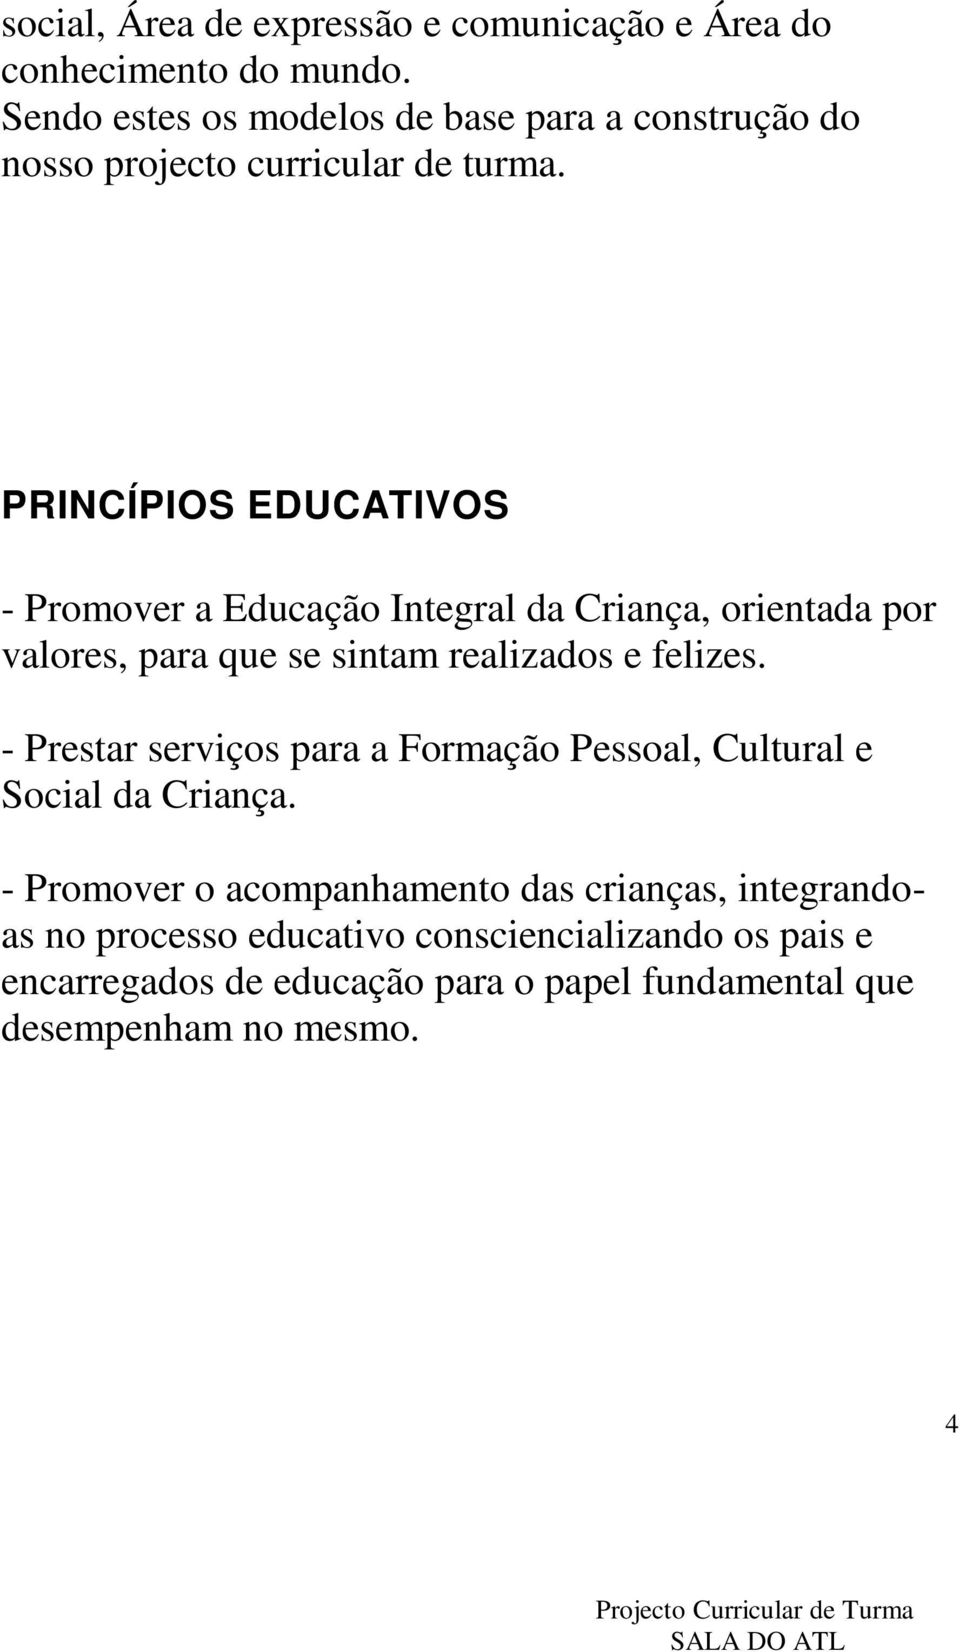 PRINCÍPIOS EDUCATIVOS - Promover a Educação Integral da Criança, orientada por valores, para que se sintam realizados e felizes.